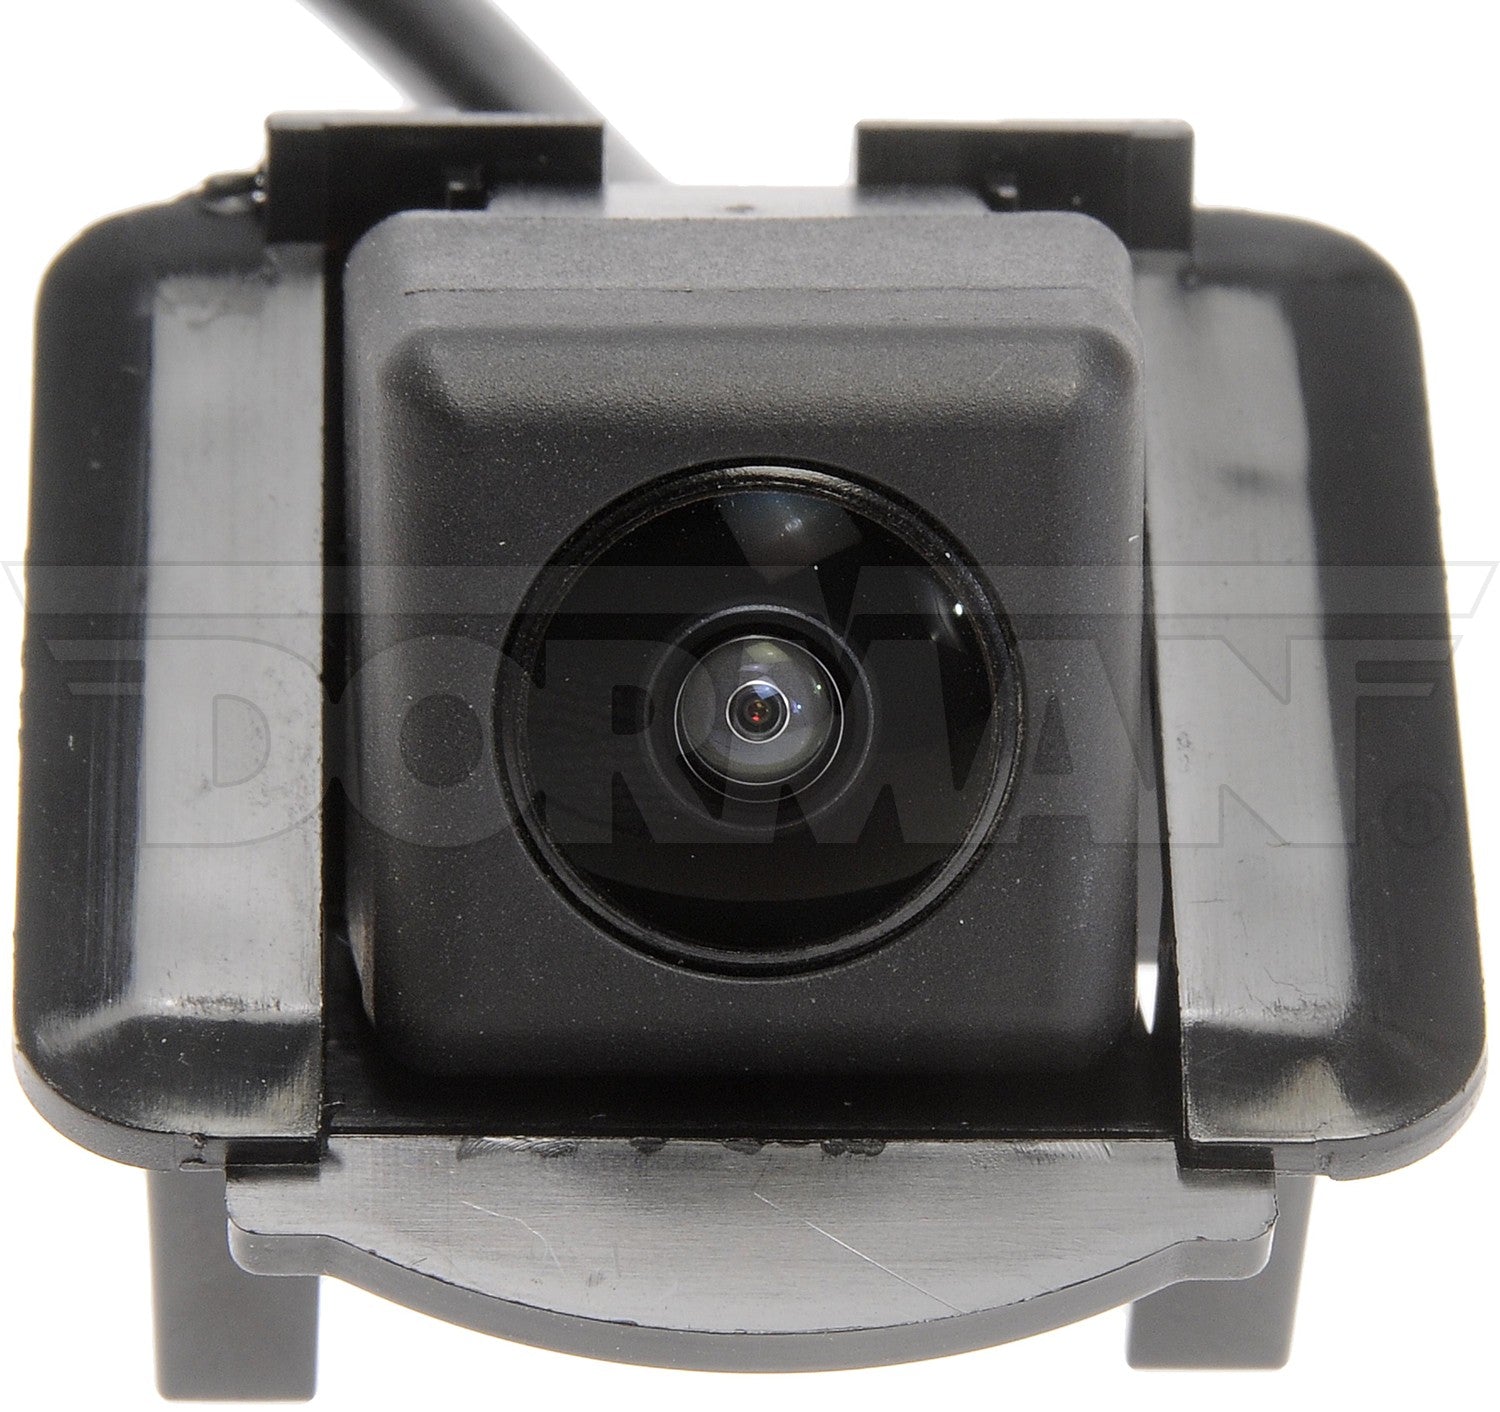 Dorman OE 590-662 Rear Park Assist Camera for 2013-2016 Mazda CX-5